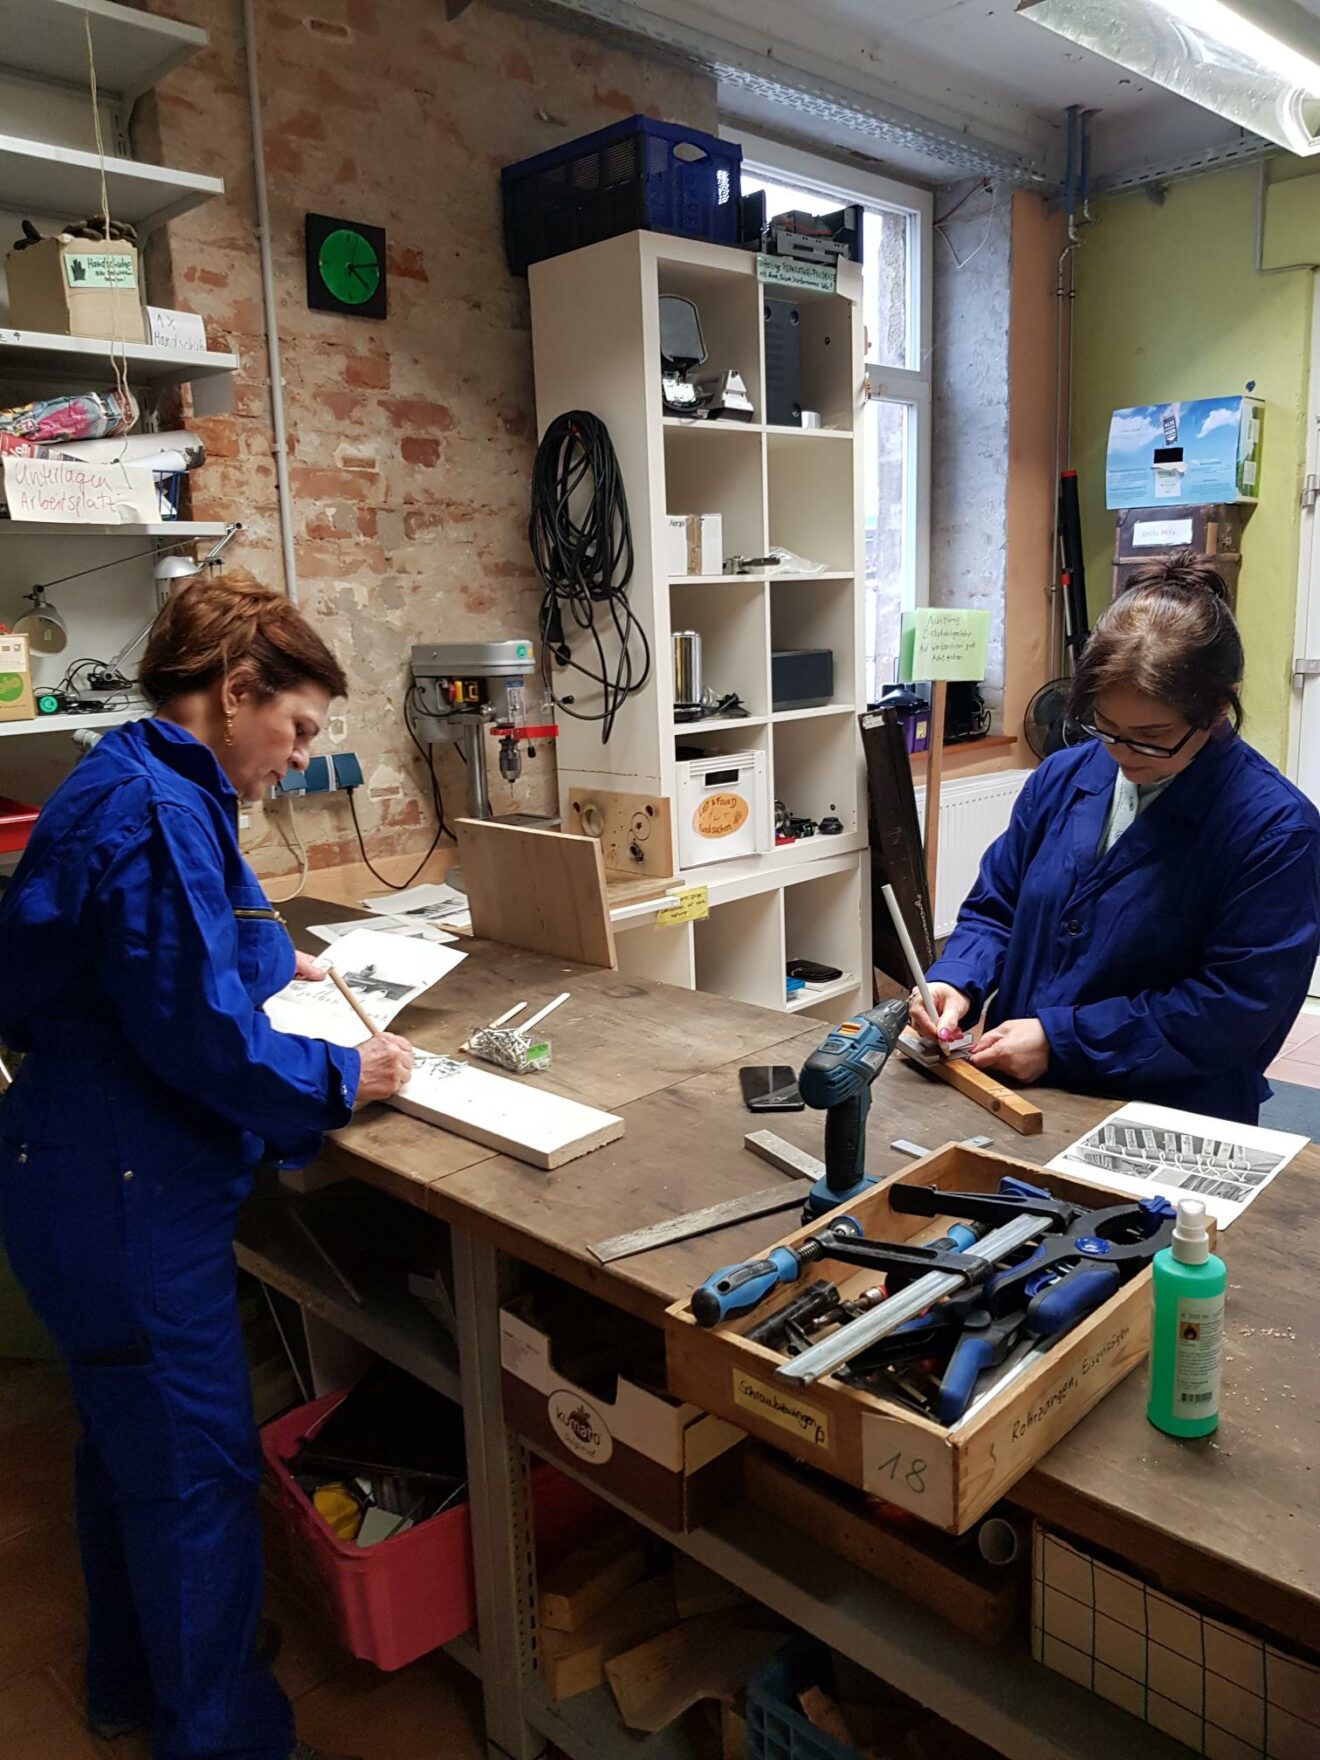 Zwei Frauen in blauen Overals stehen an der Werkbank und arbeiten an ihren Holz-Projekten.